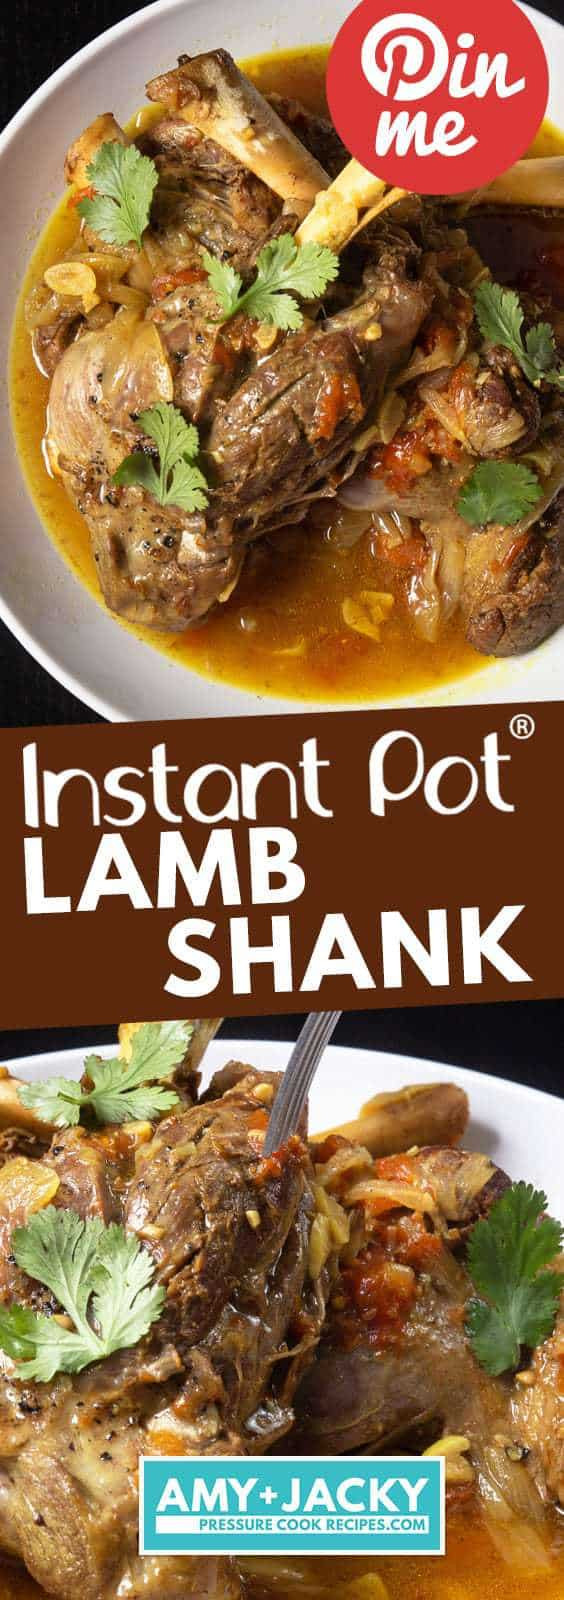 Instant Pot Lamb Shank Recipes
 Instant Pot Lamb Shank